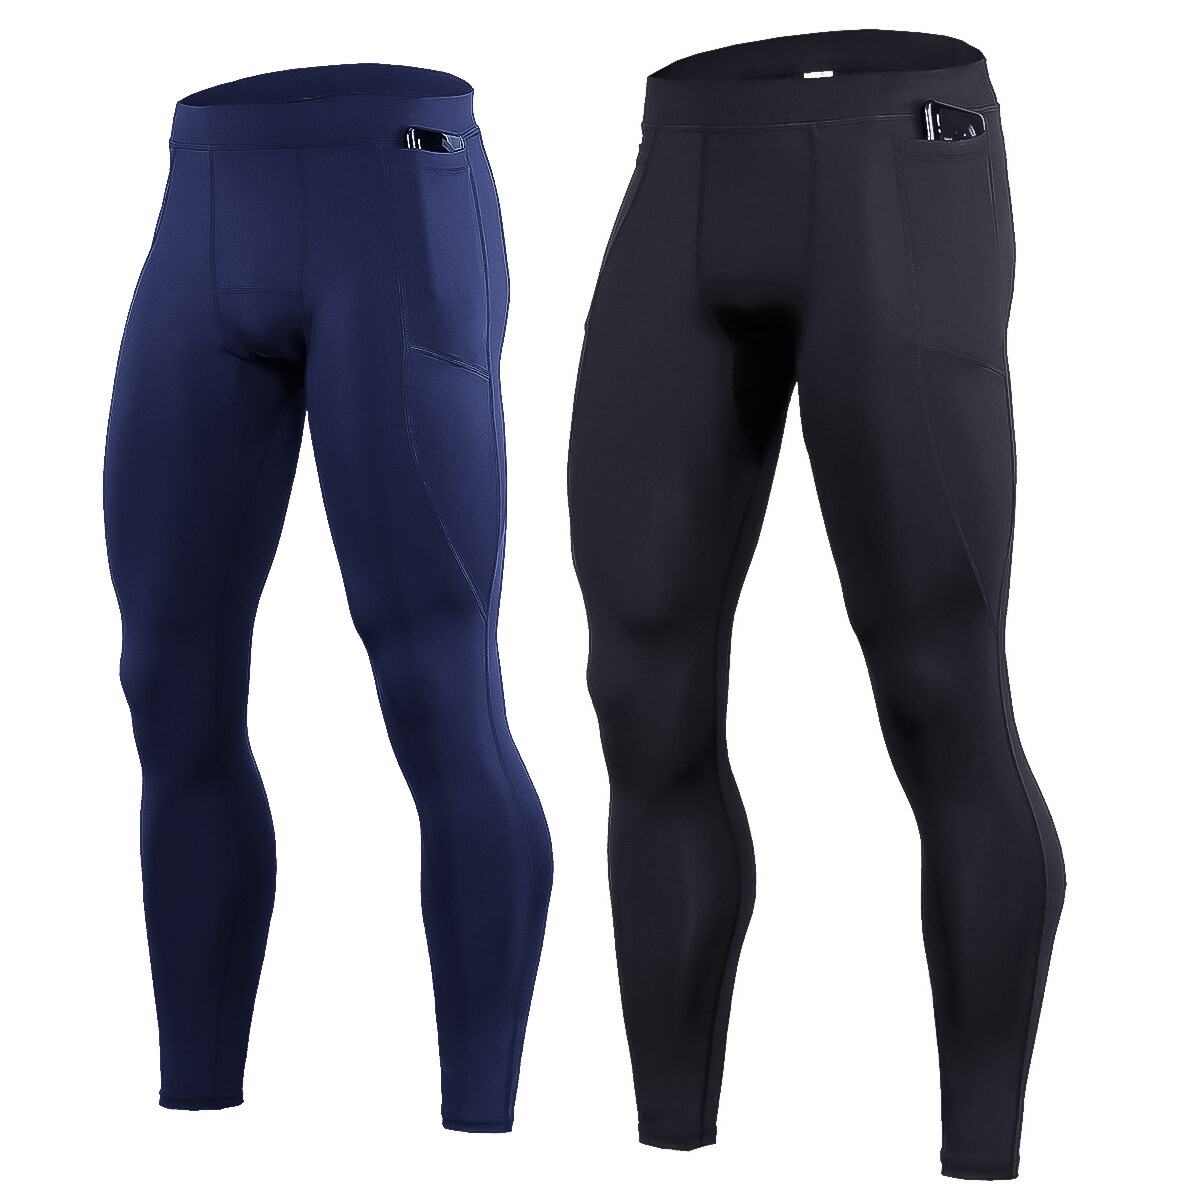 Pantalón Deportivo Calza Larga X2 Térmica Con Bolsillo Para Hombre - Negro-Azul 